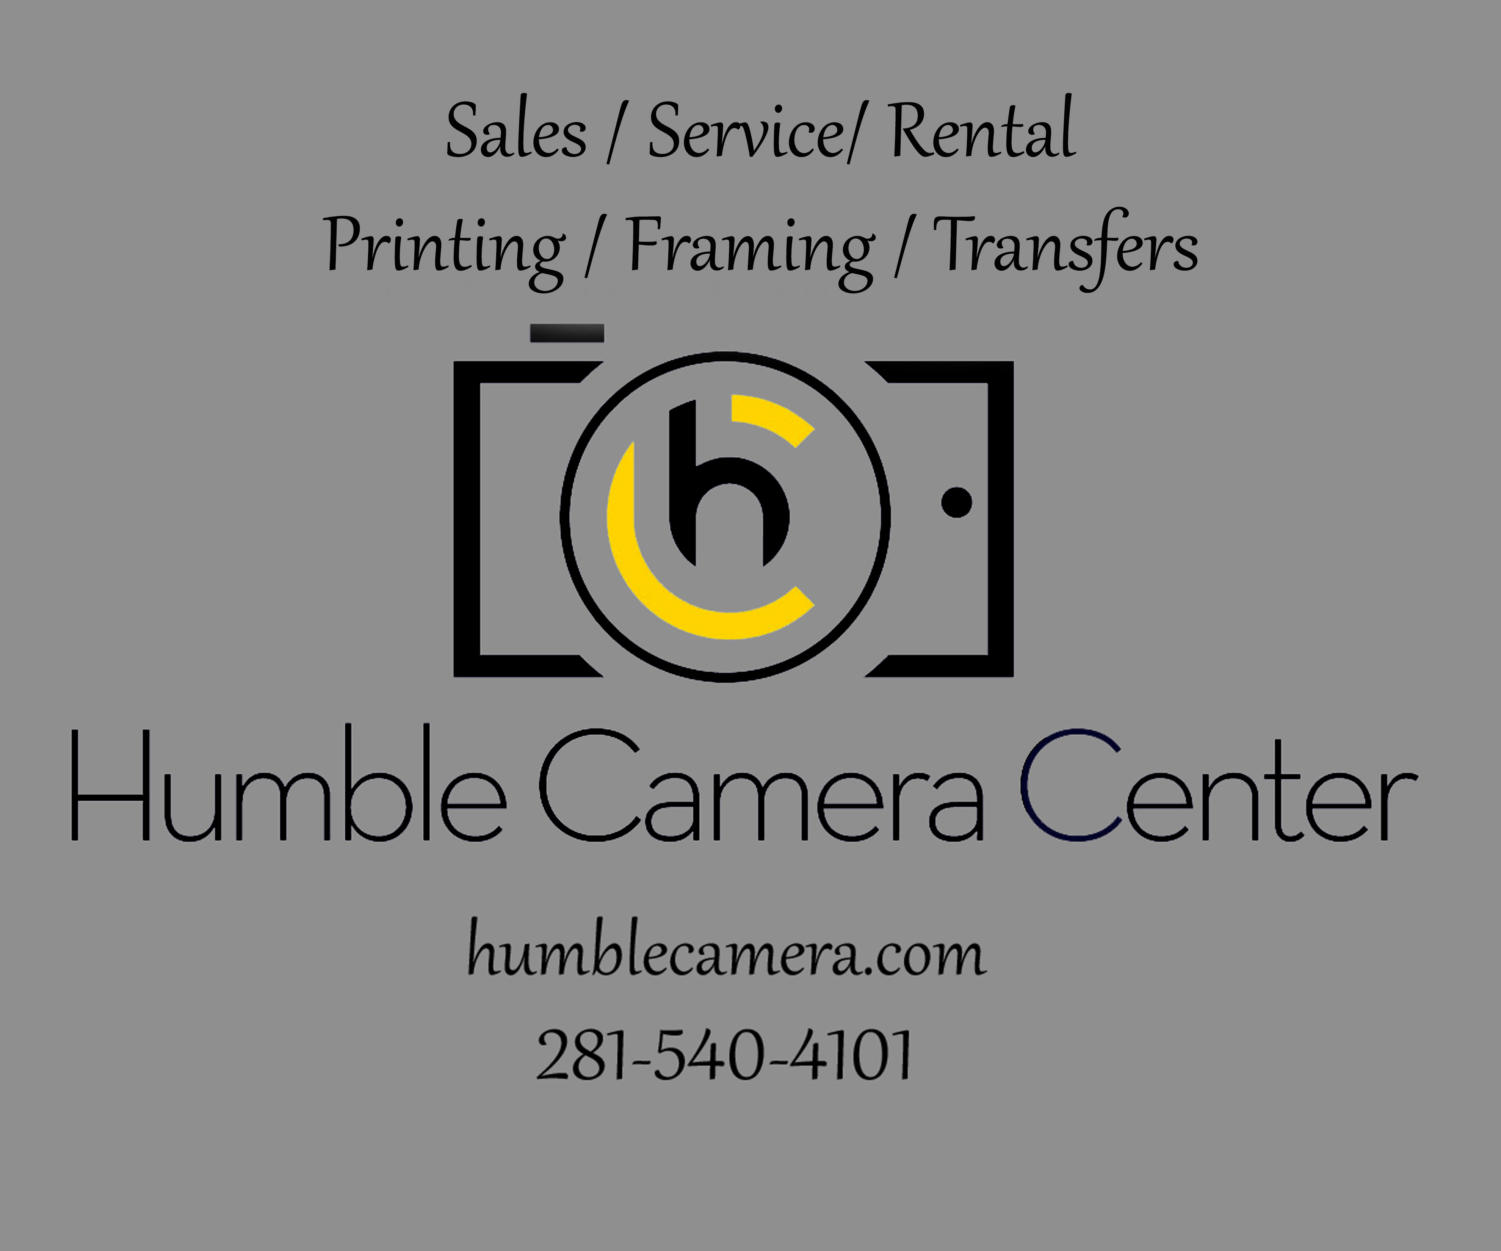 Humble Camera